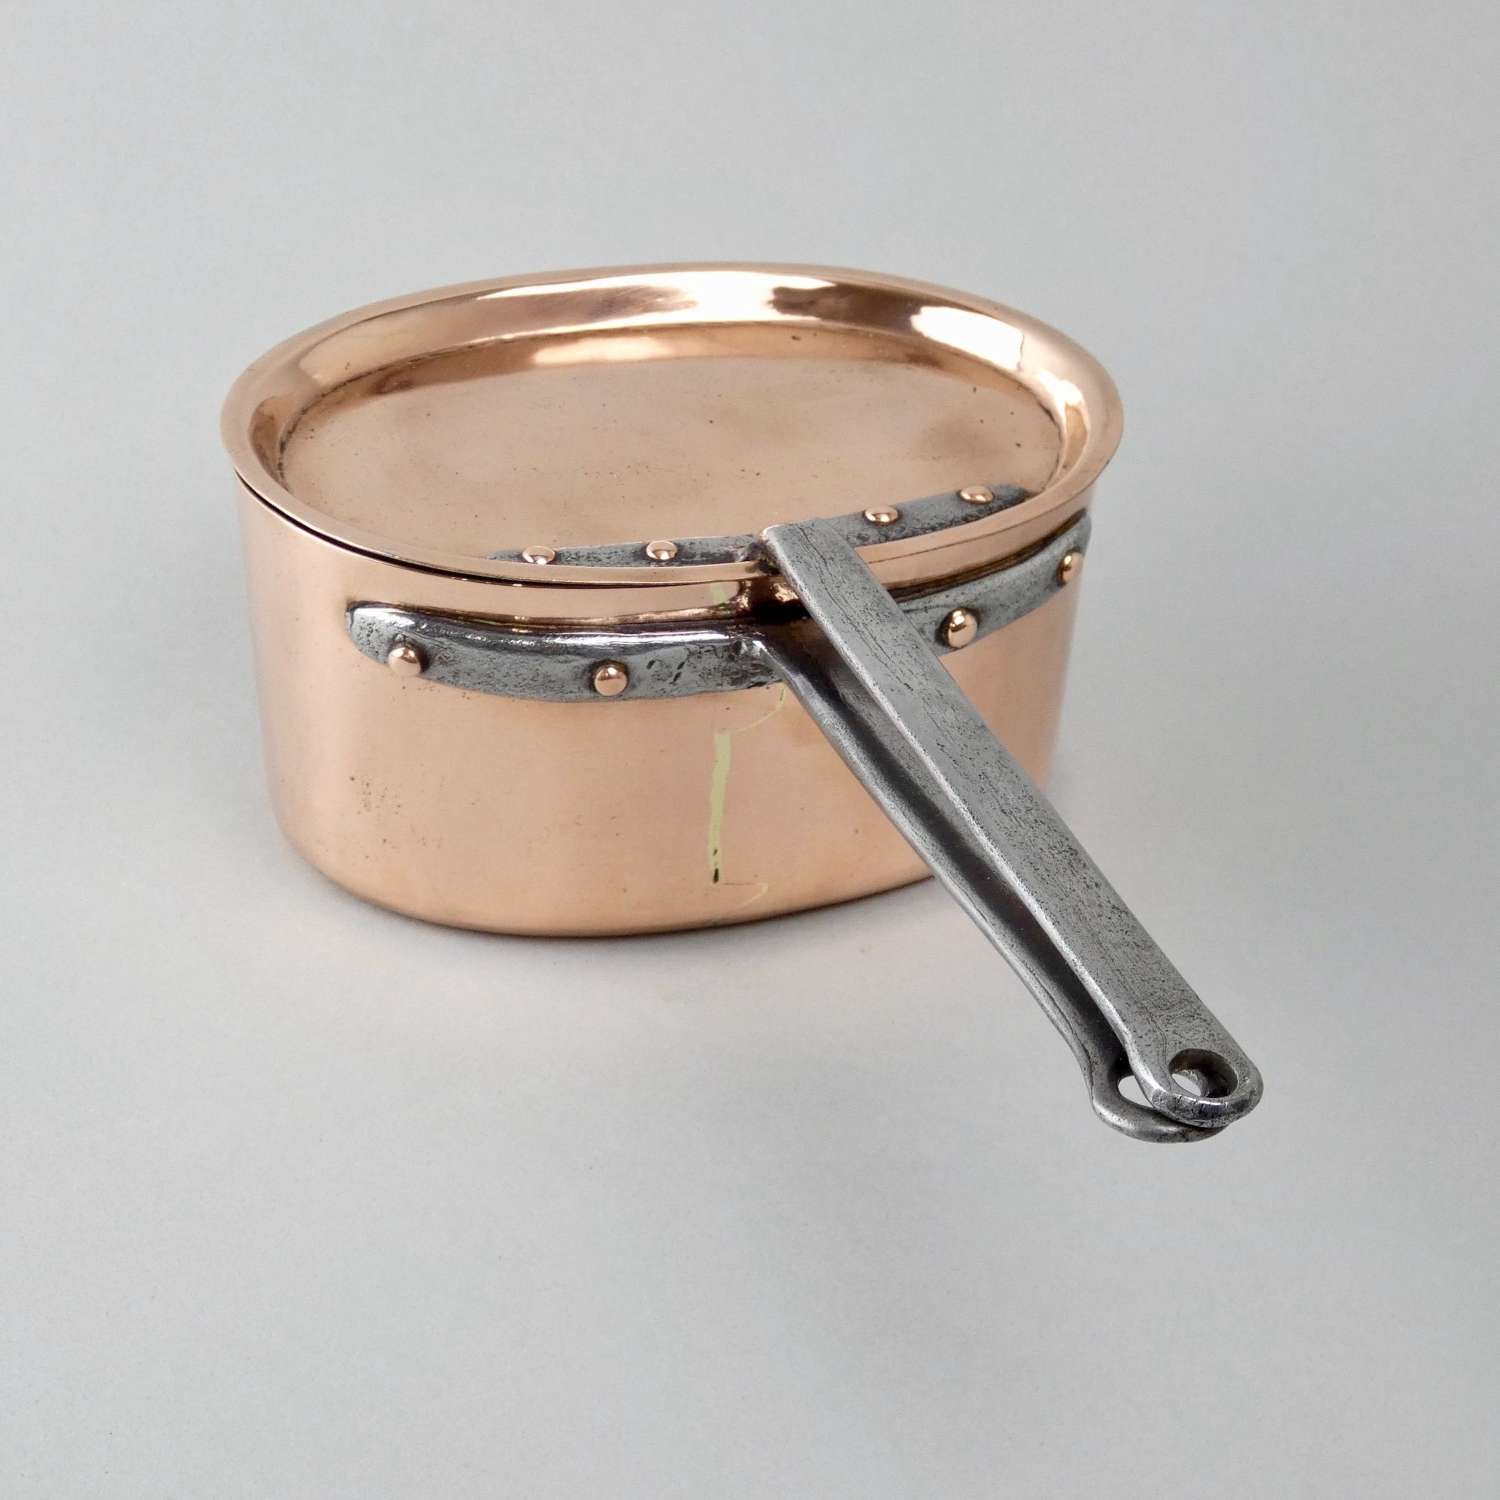 Small, oval copper saucepan